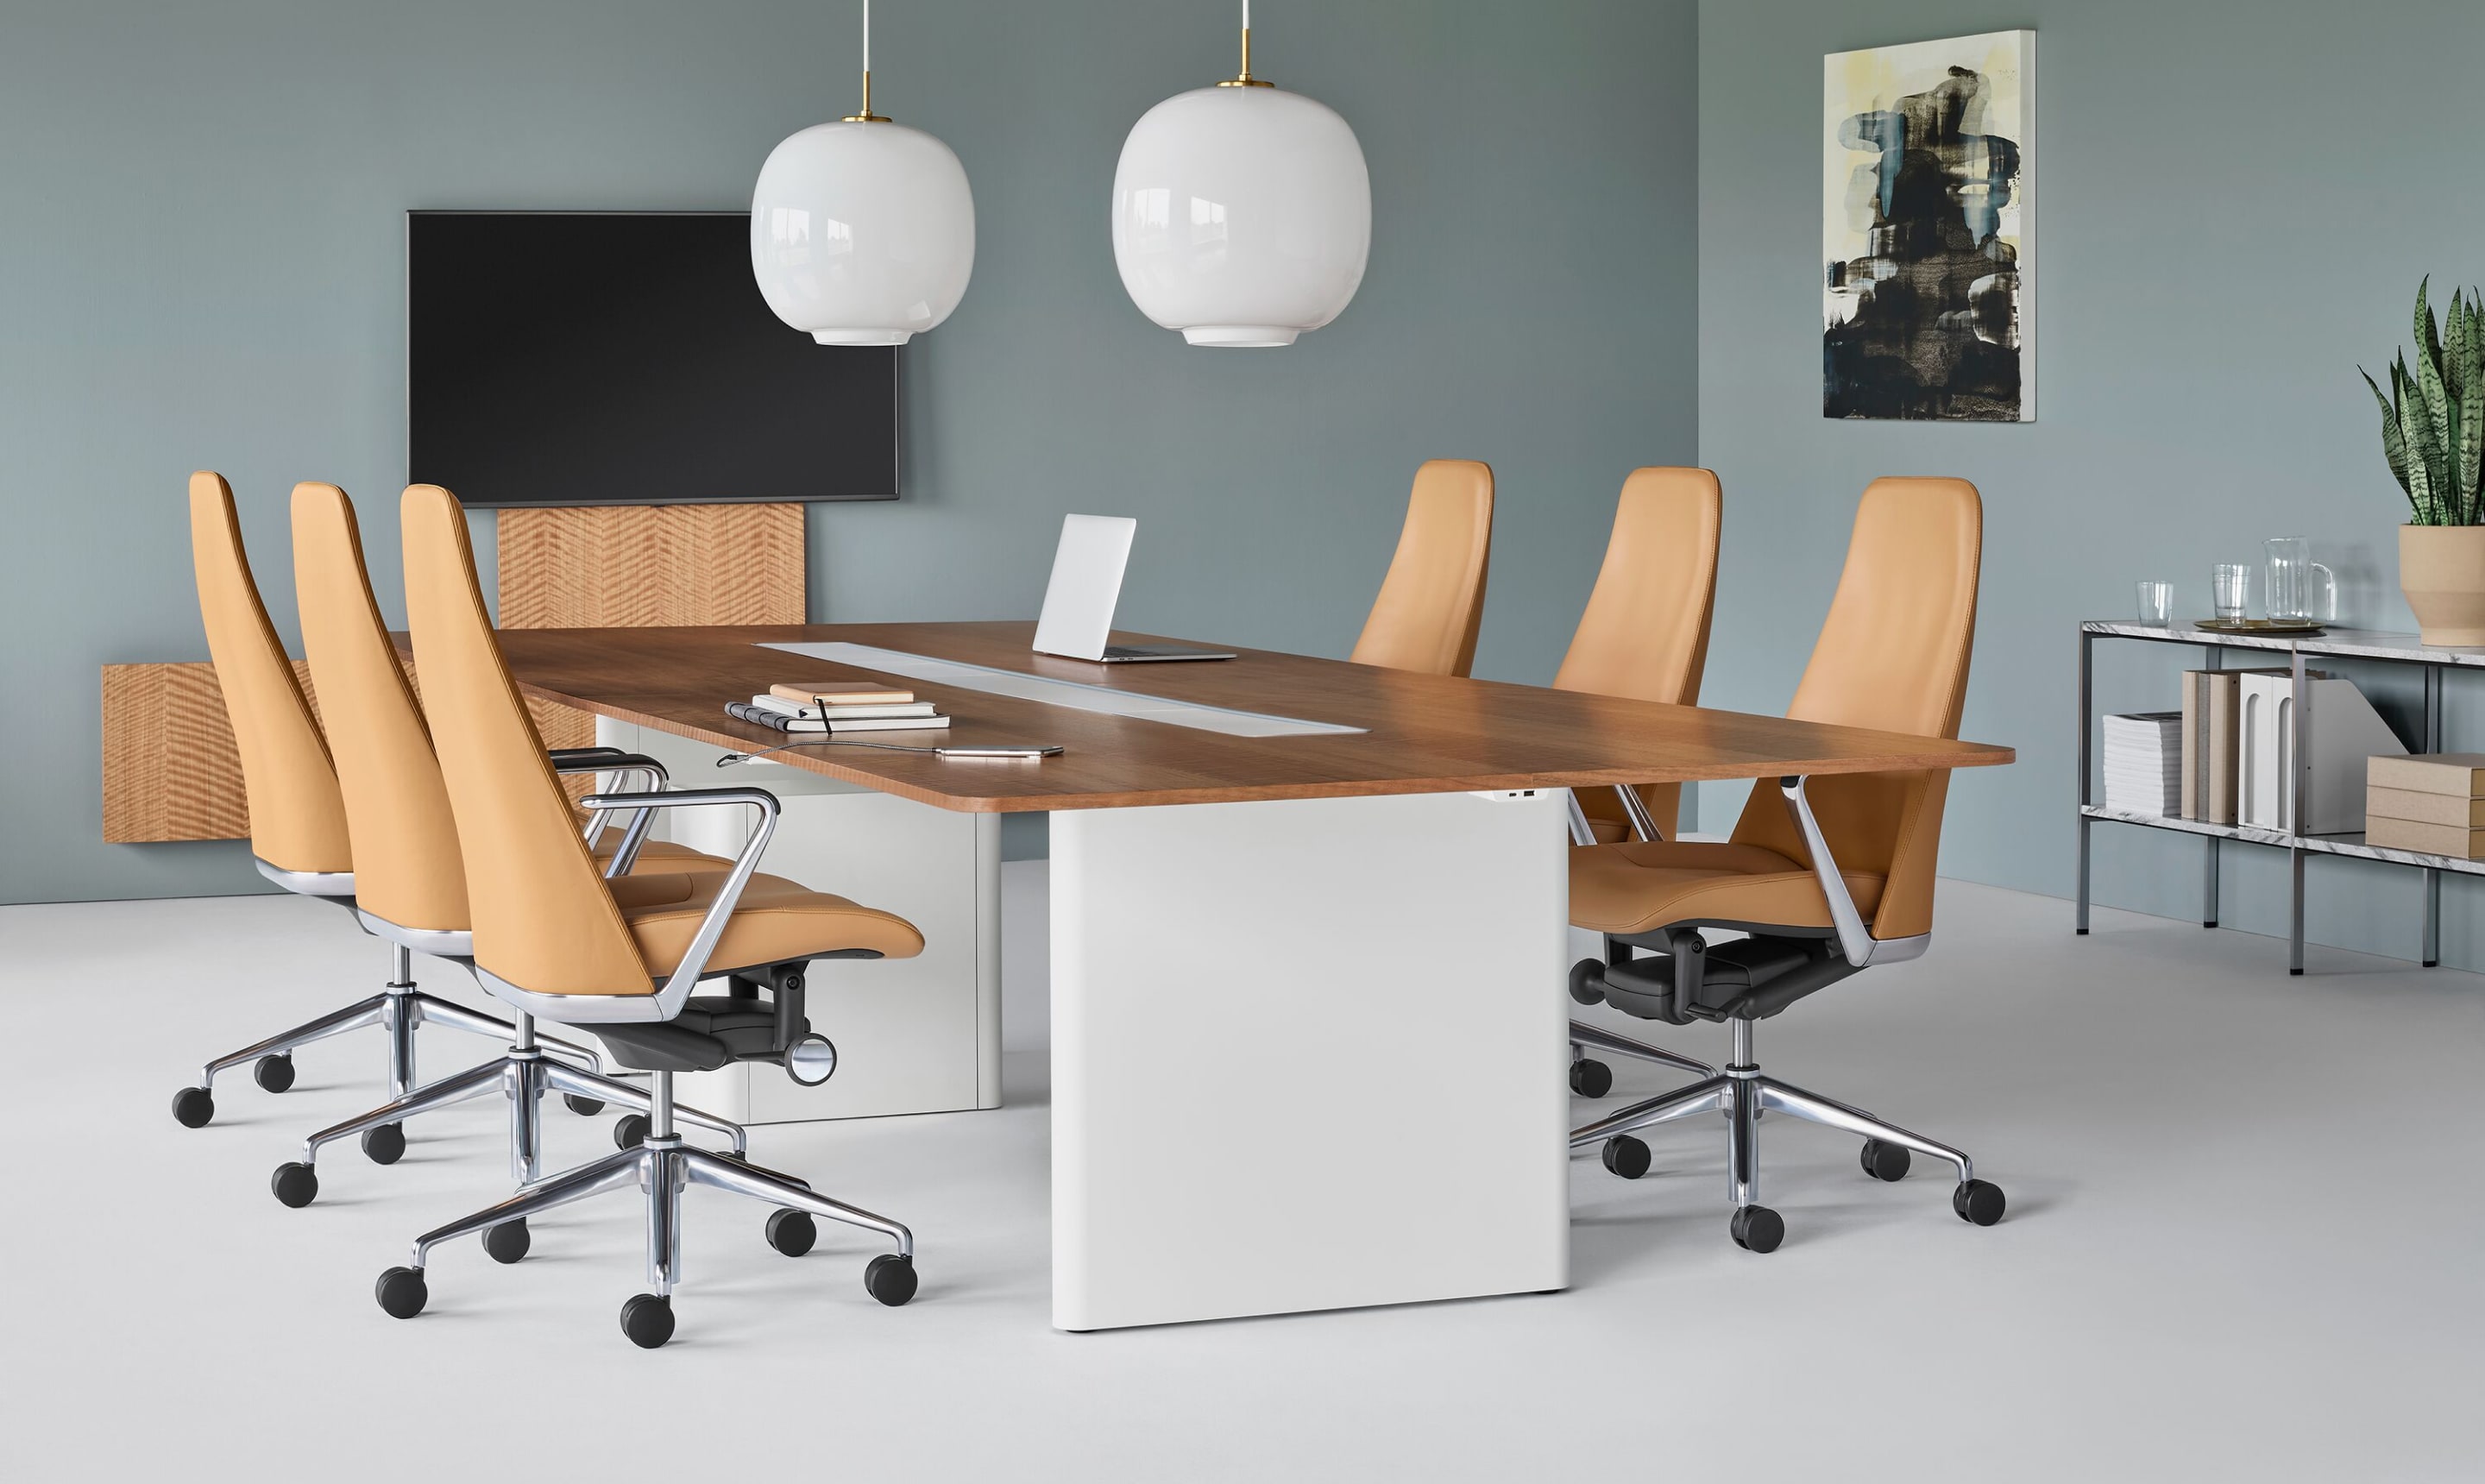 会议室装有矩形Axon会议表和木质顶板,由用骆驼色皮革装饰的六张塔波办公椅环绕